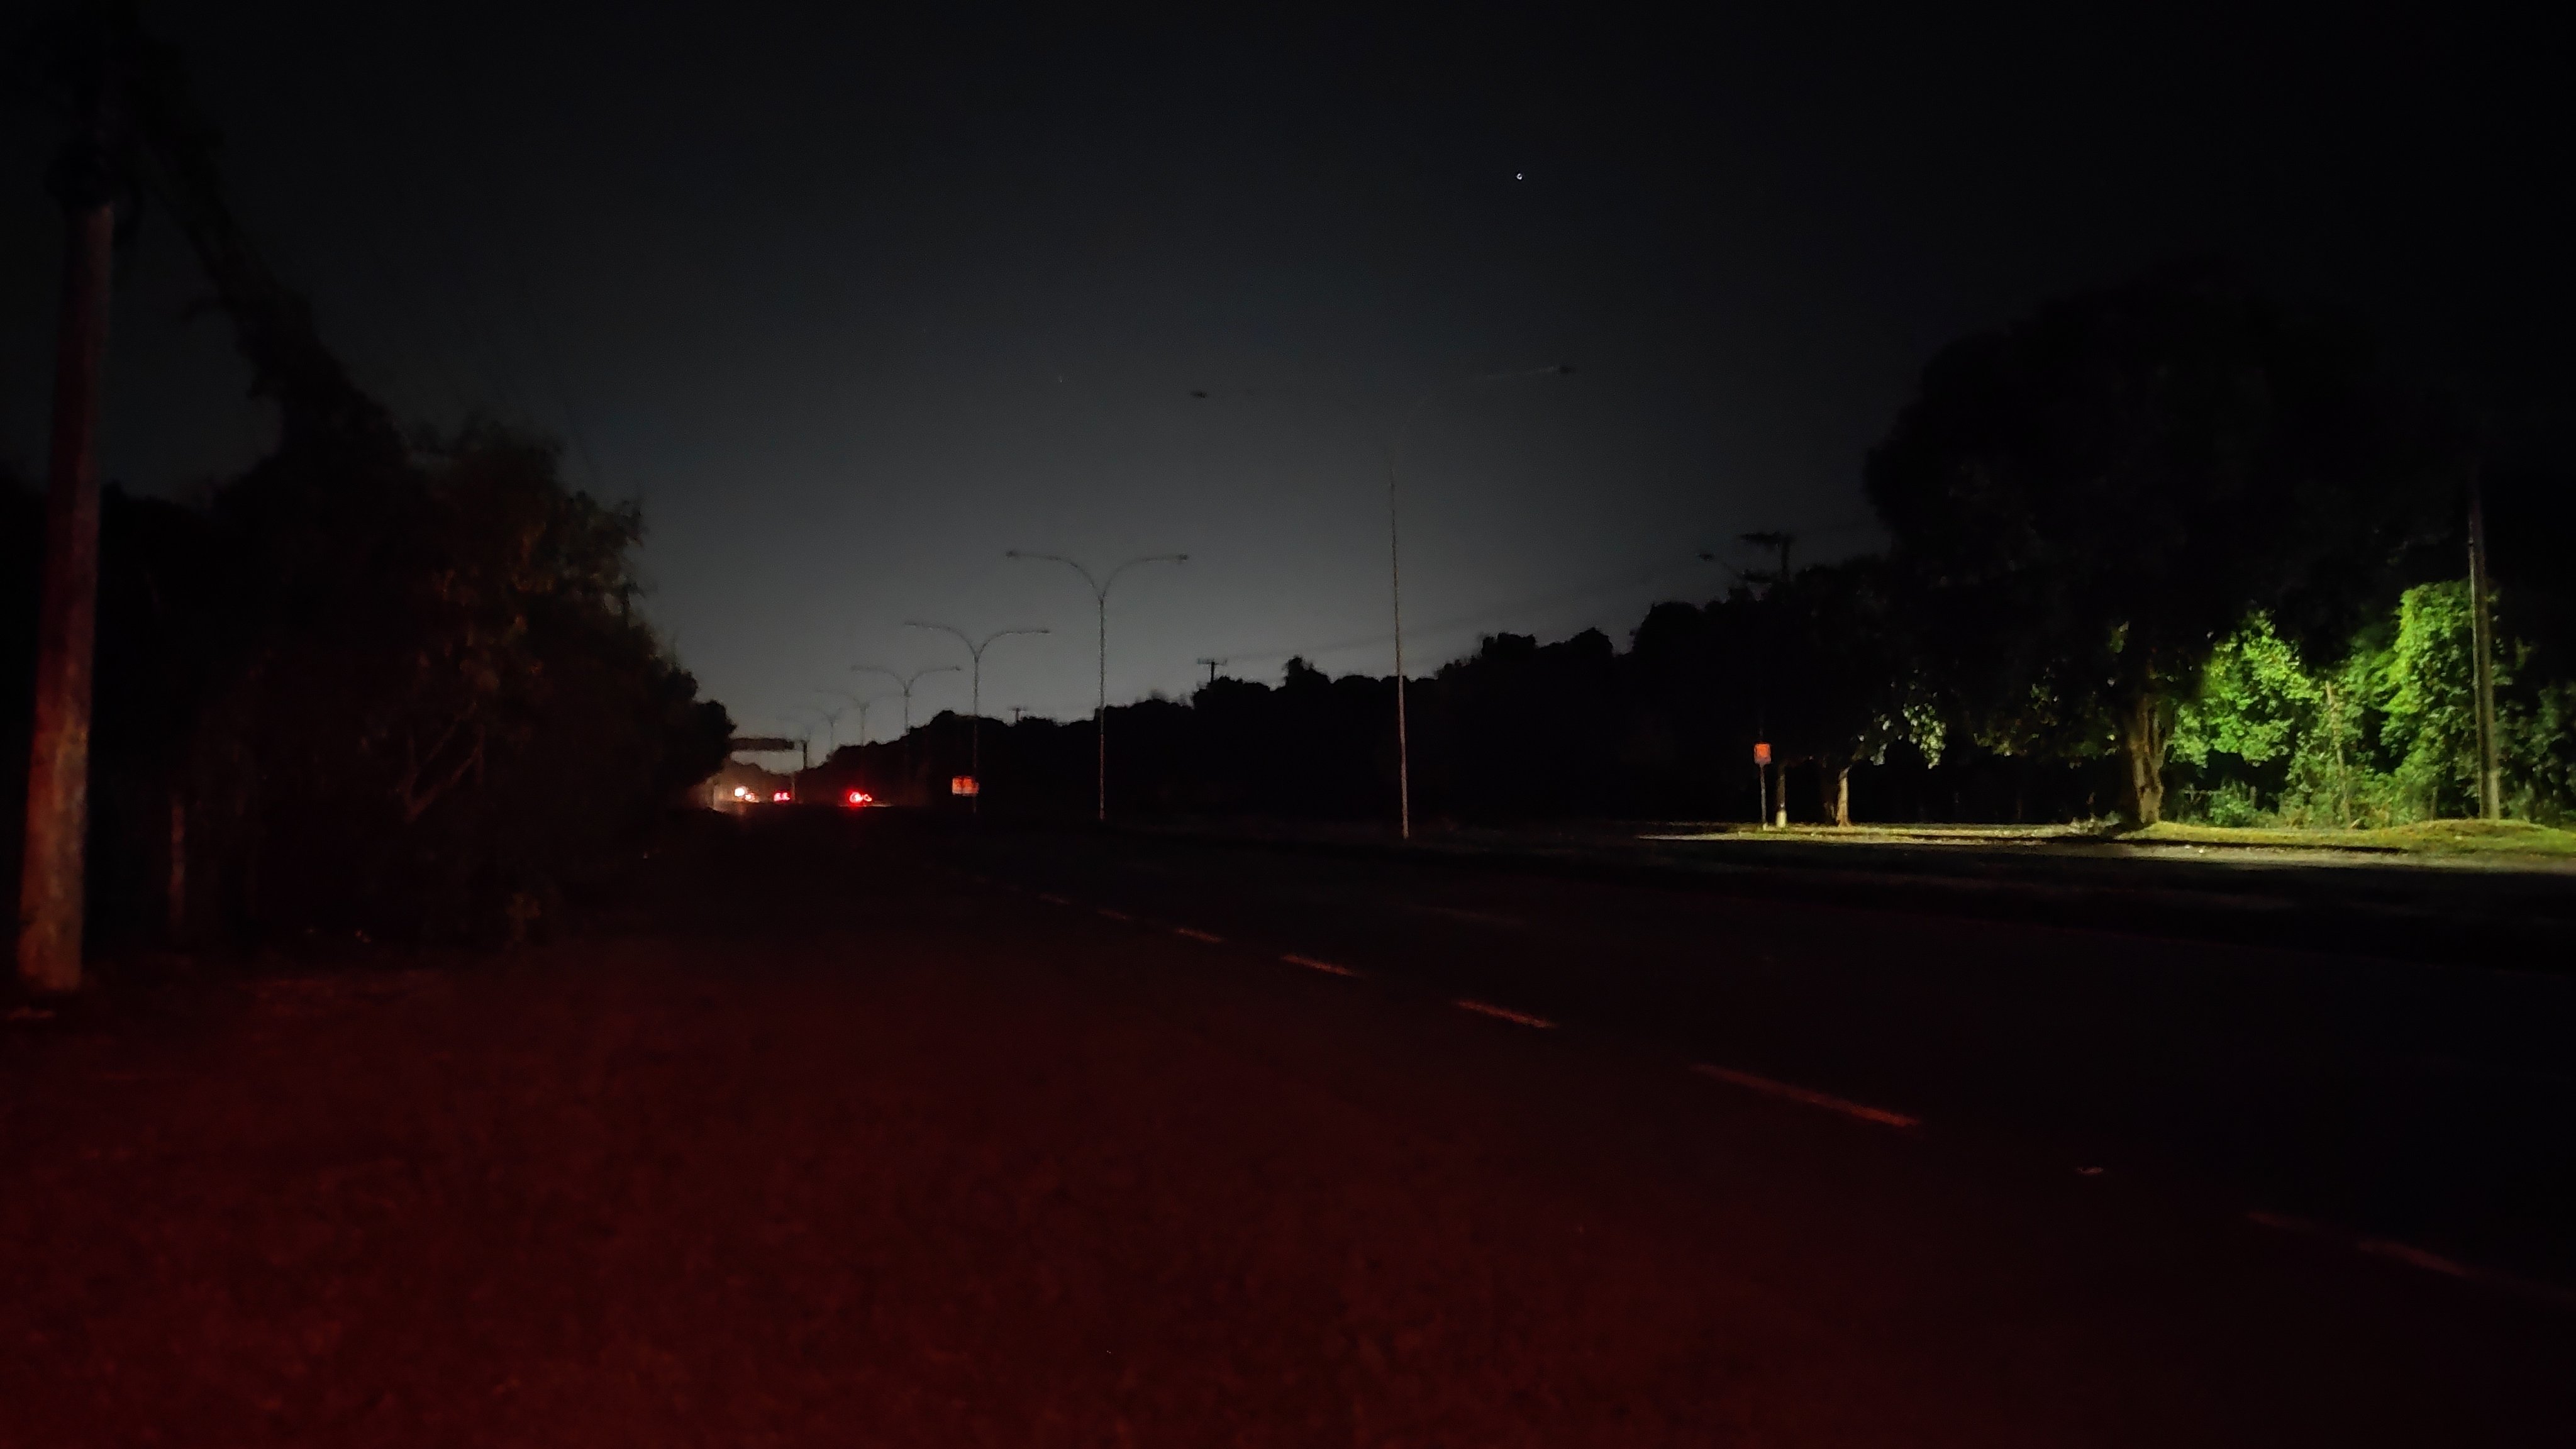 Imagens foram registradas na noite de segunda-feira (13) e mostram escuridão no local